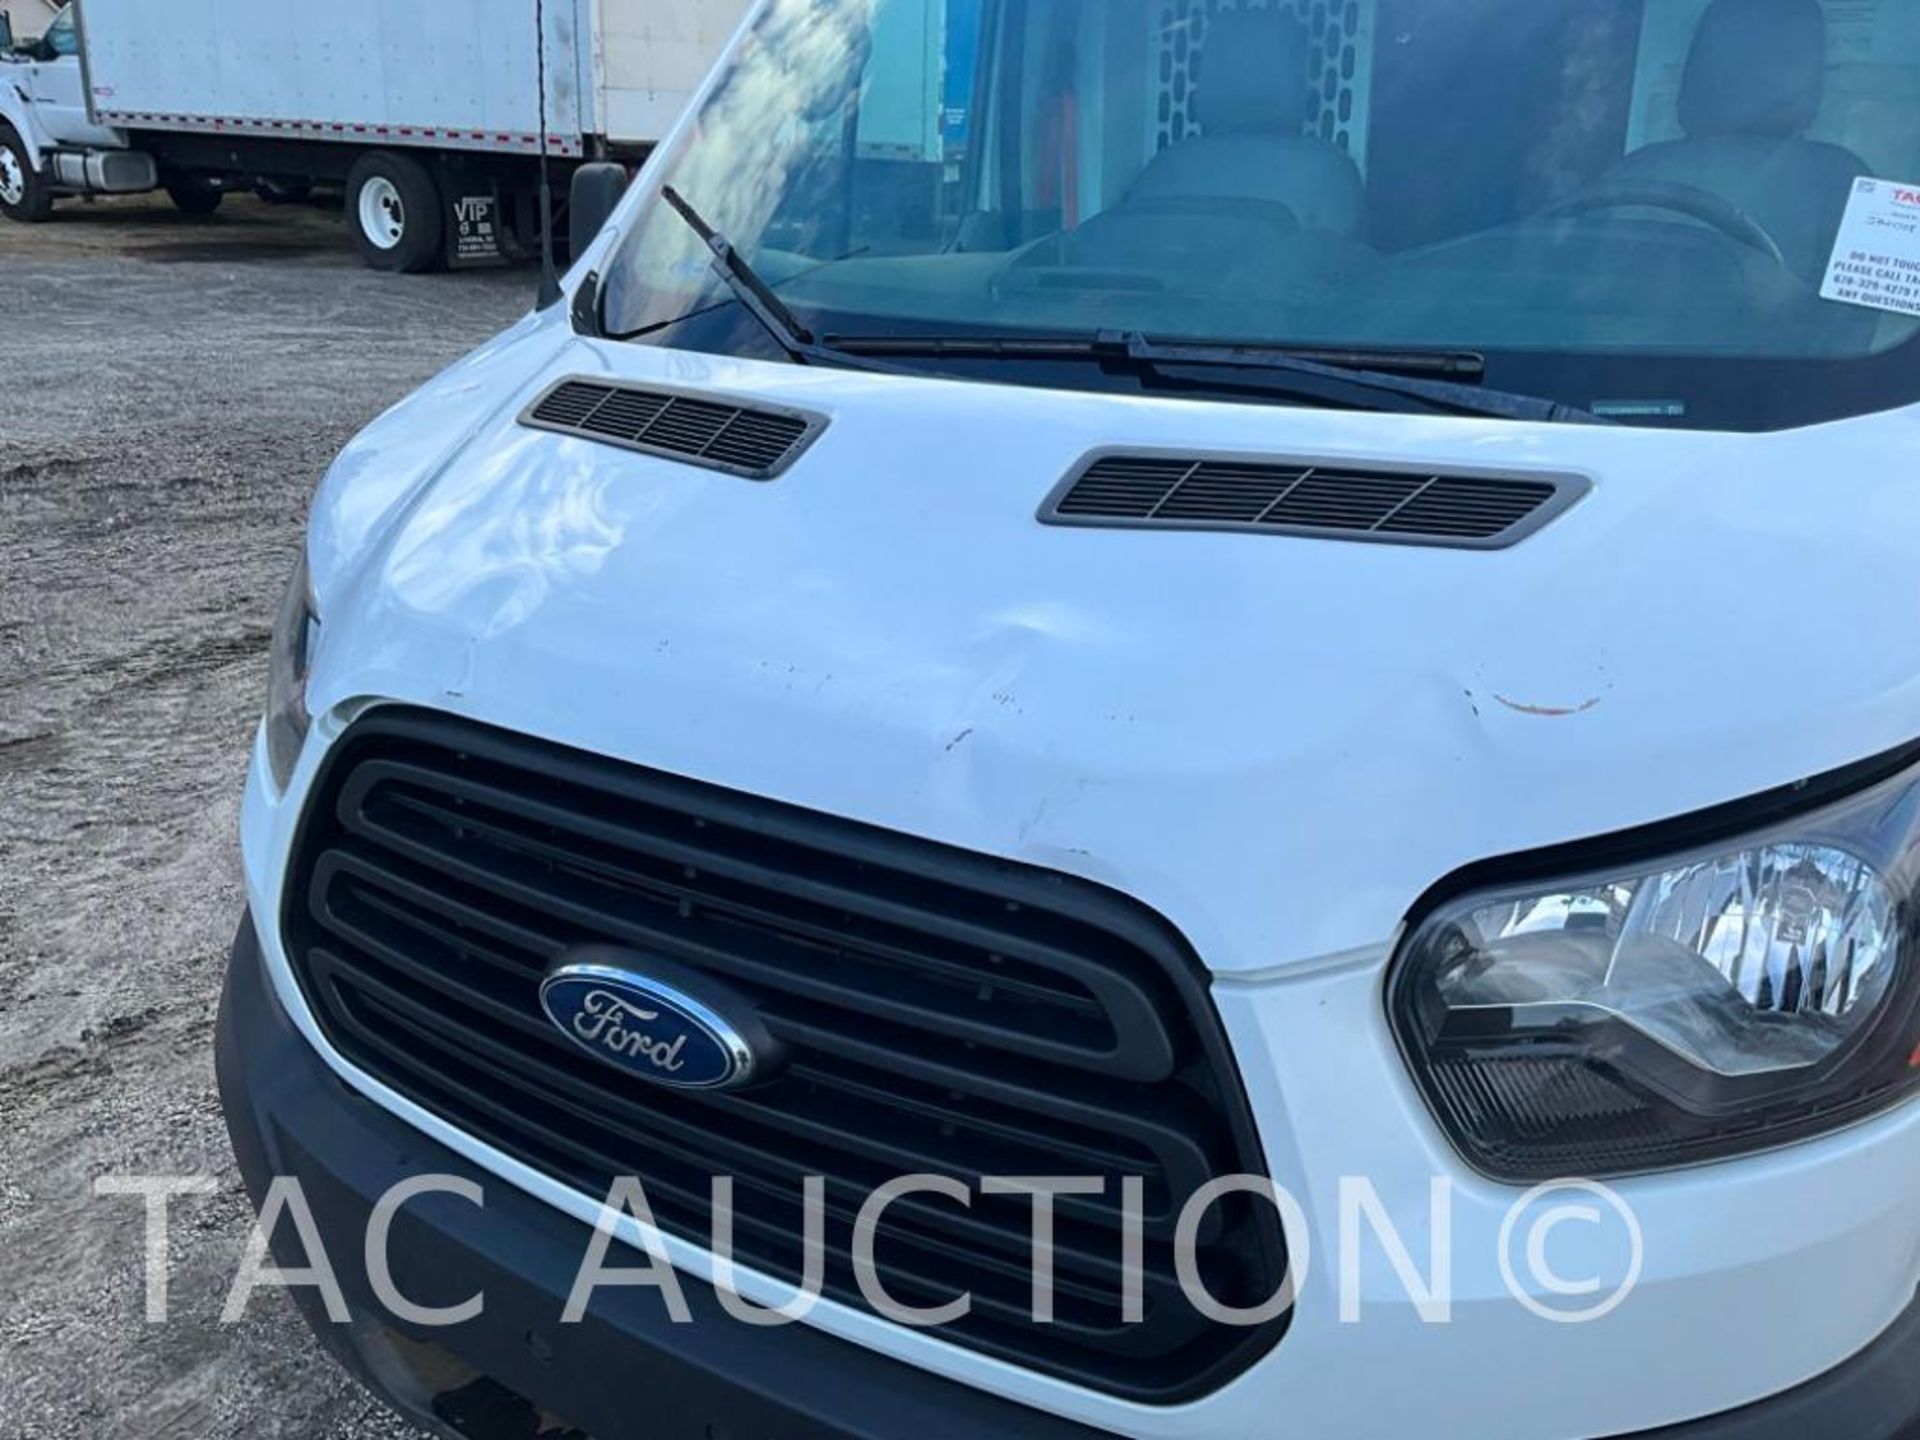 2019 Ford Transit 150 Cargo Van - Image 42 of 46